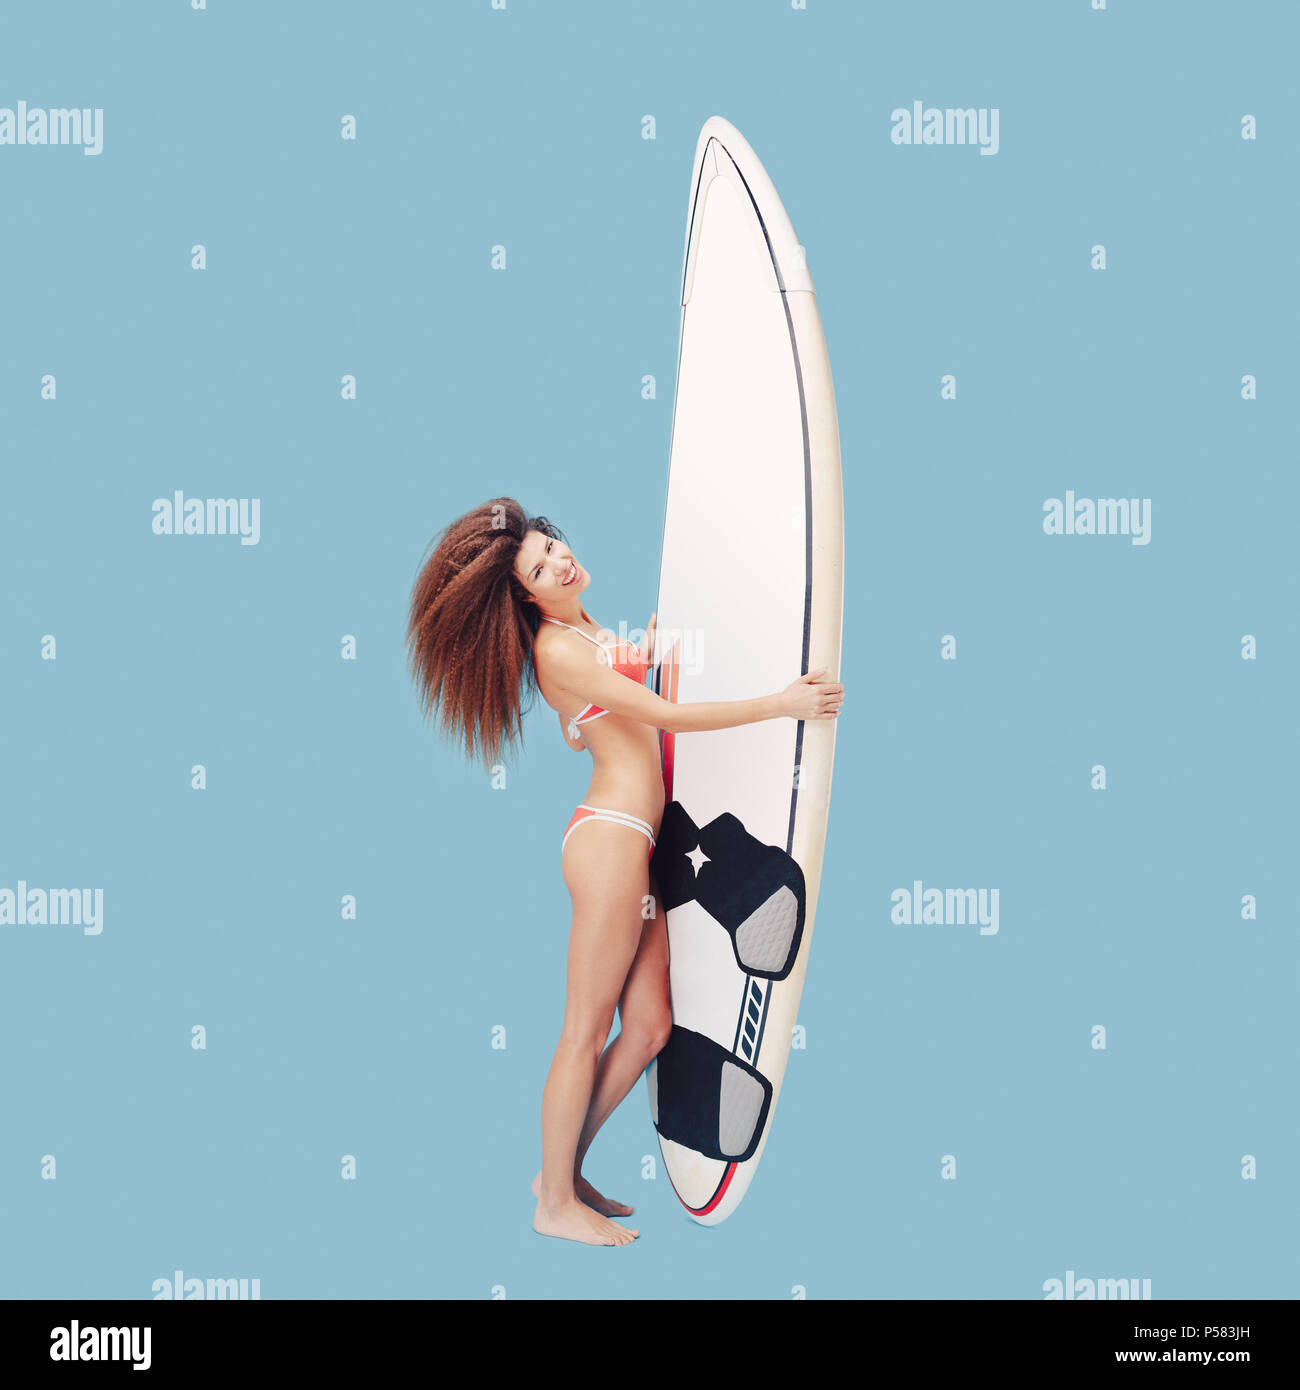 Profiter de la vie surfer girl Banque D'Images